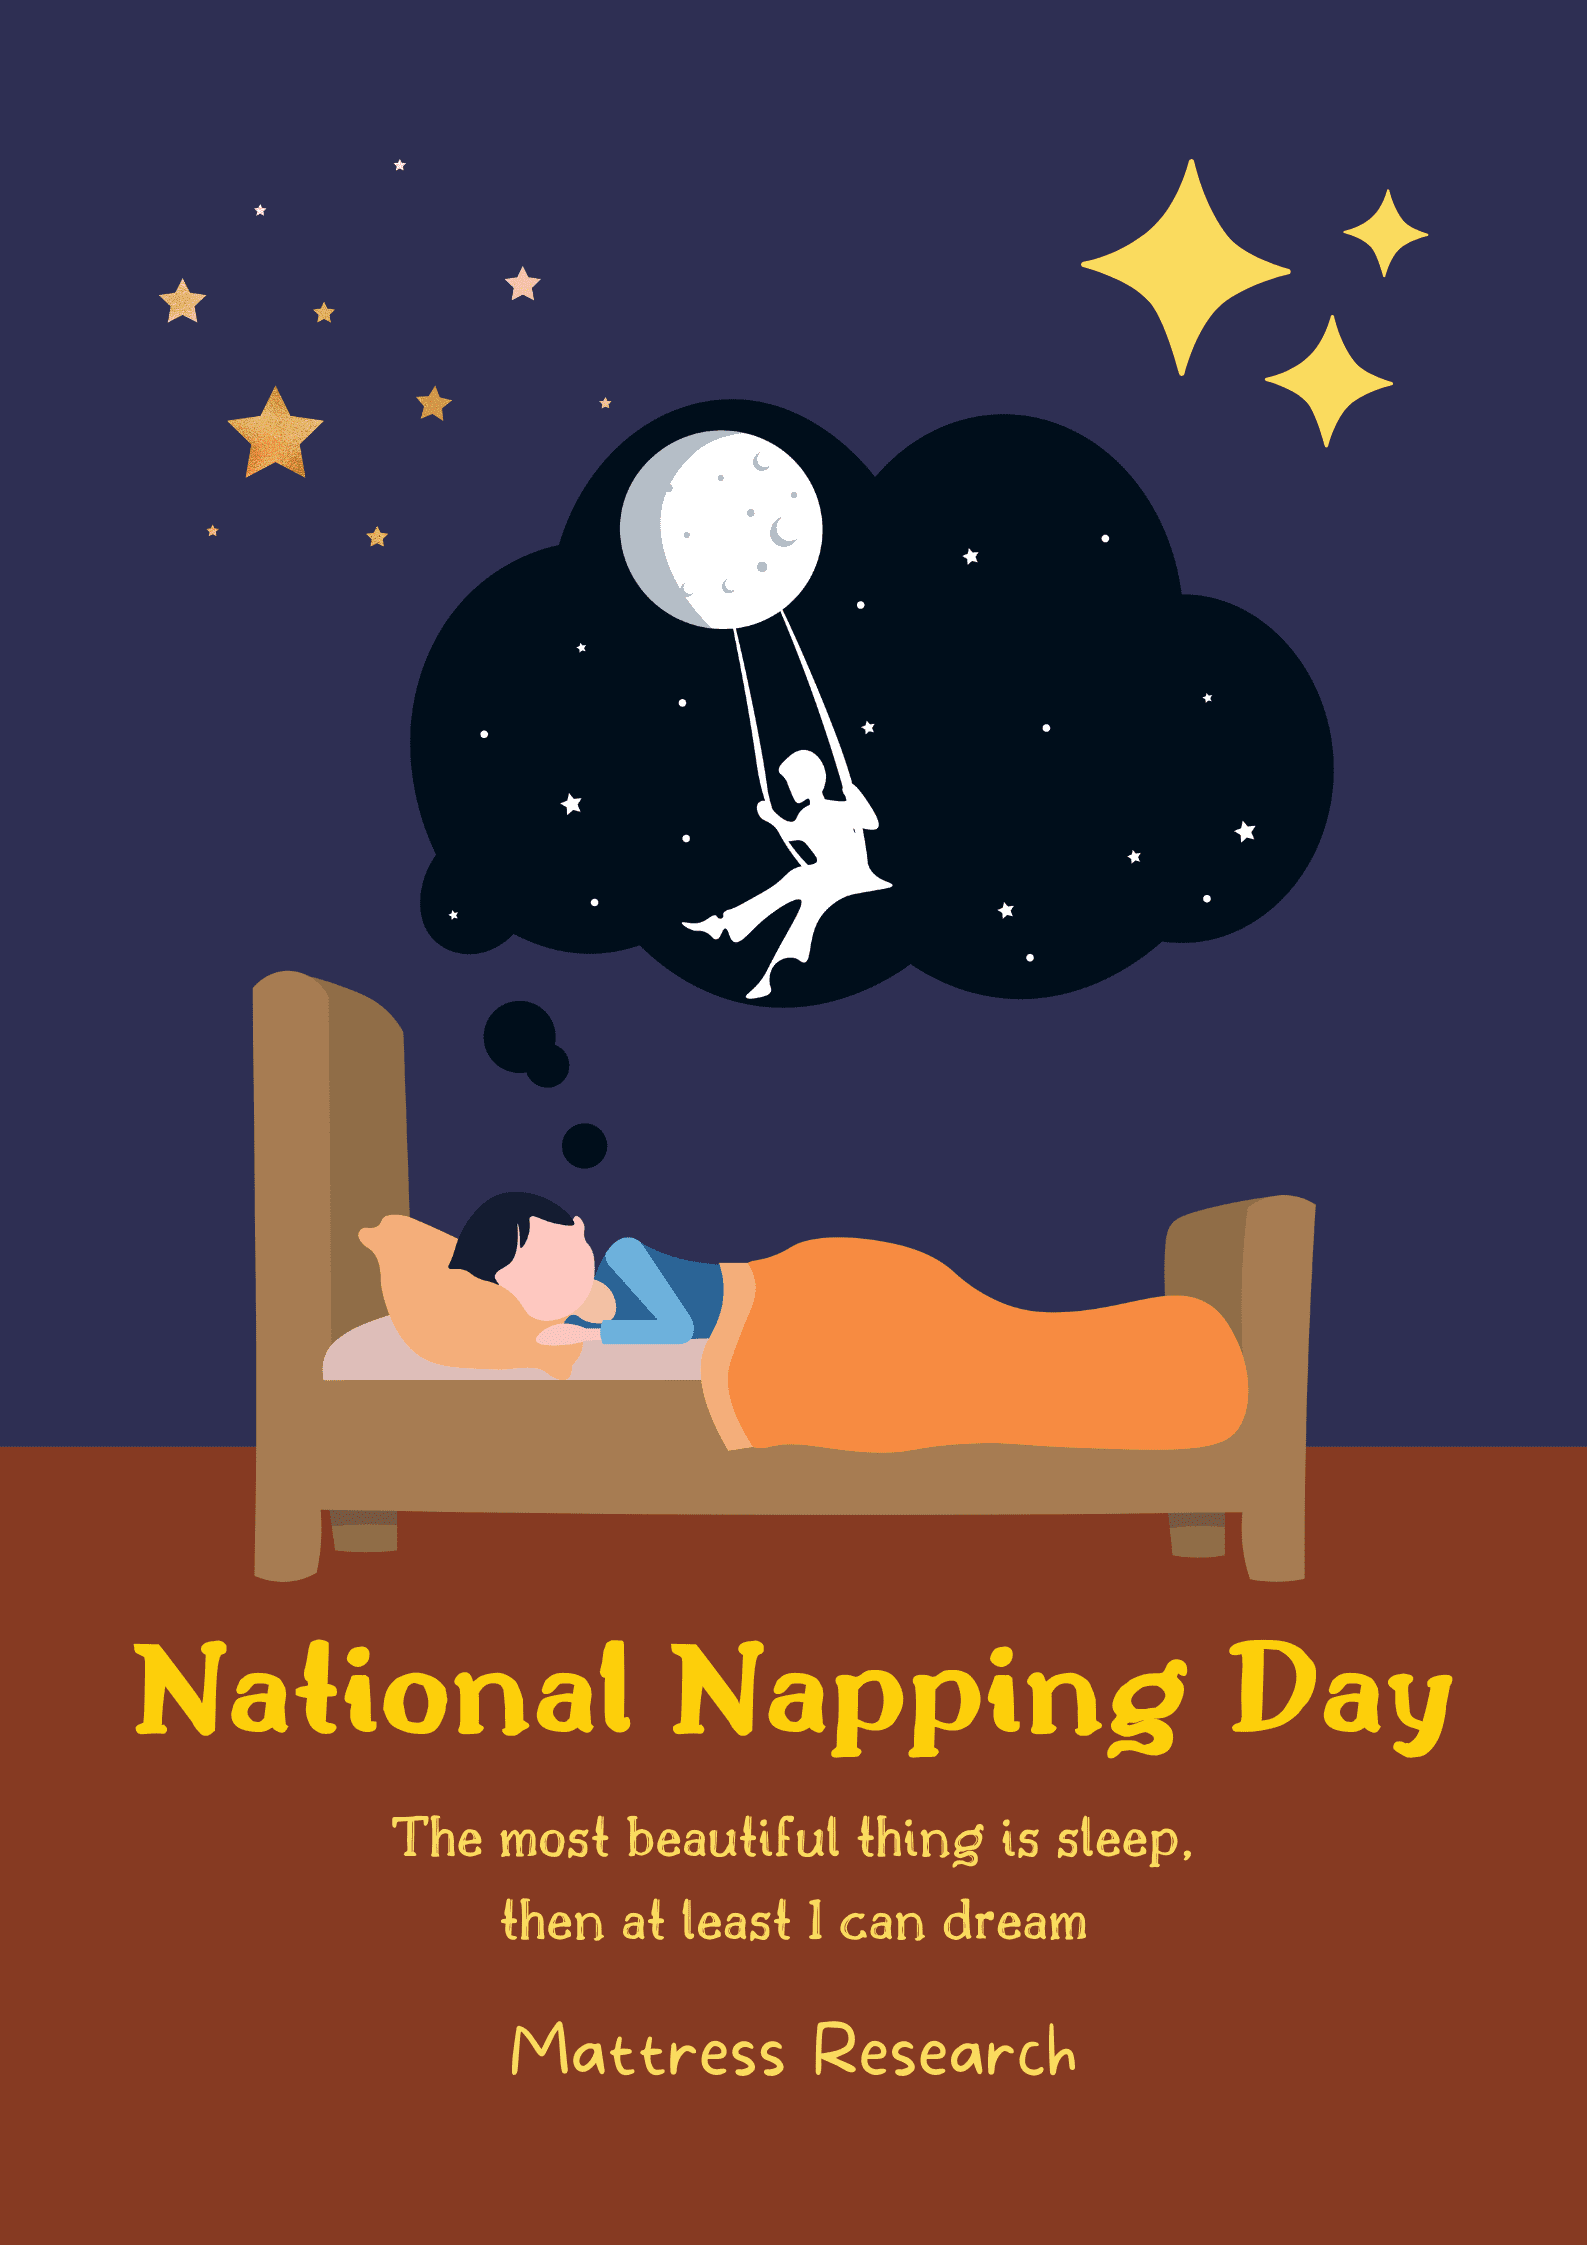 napping